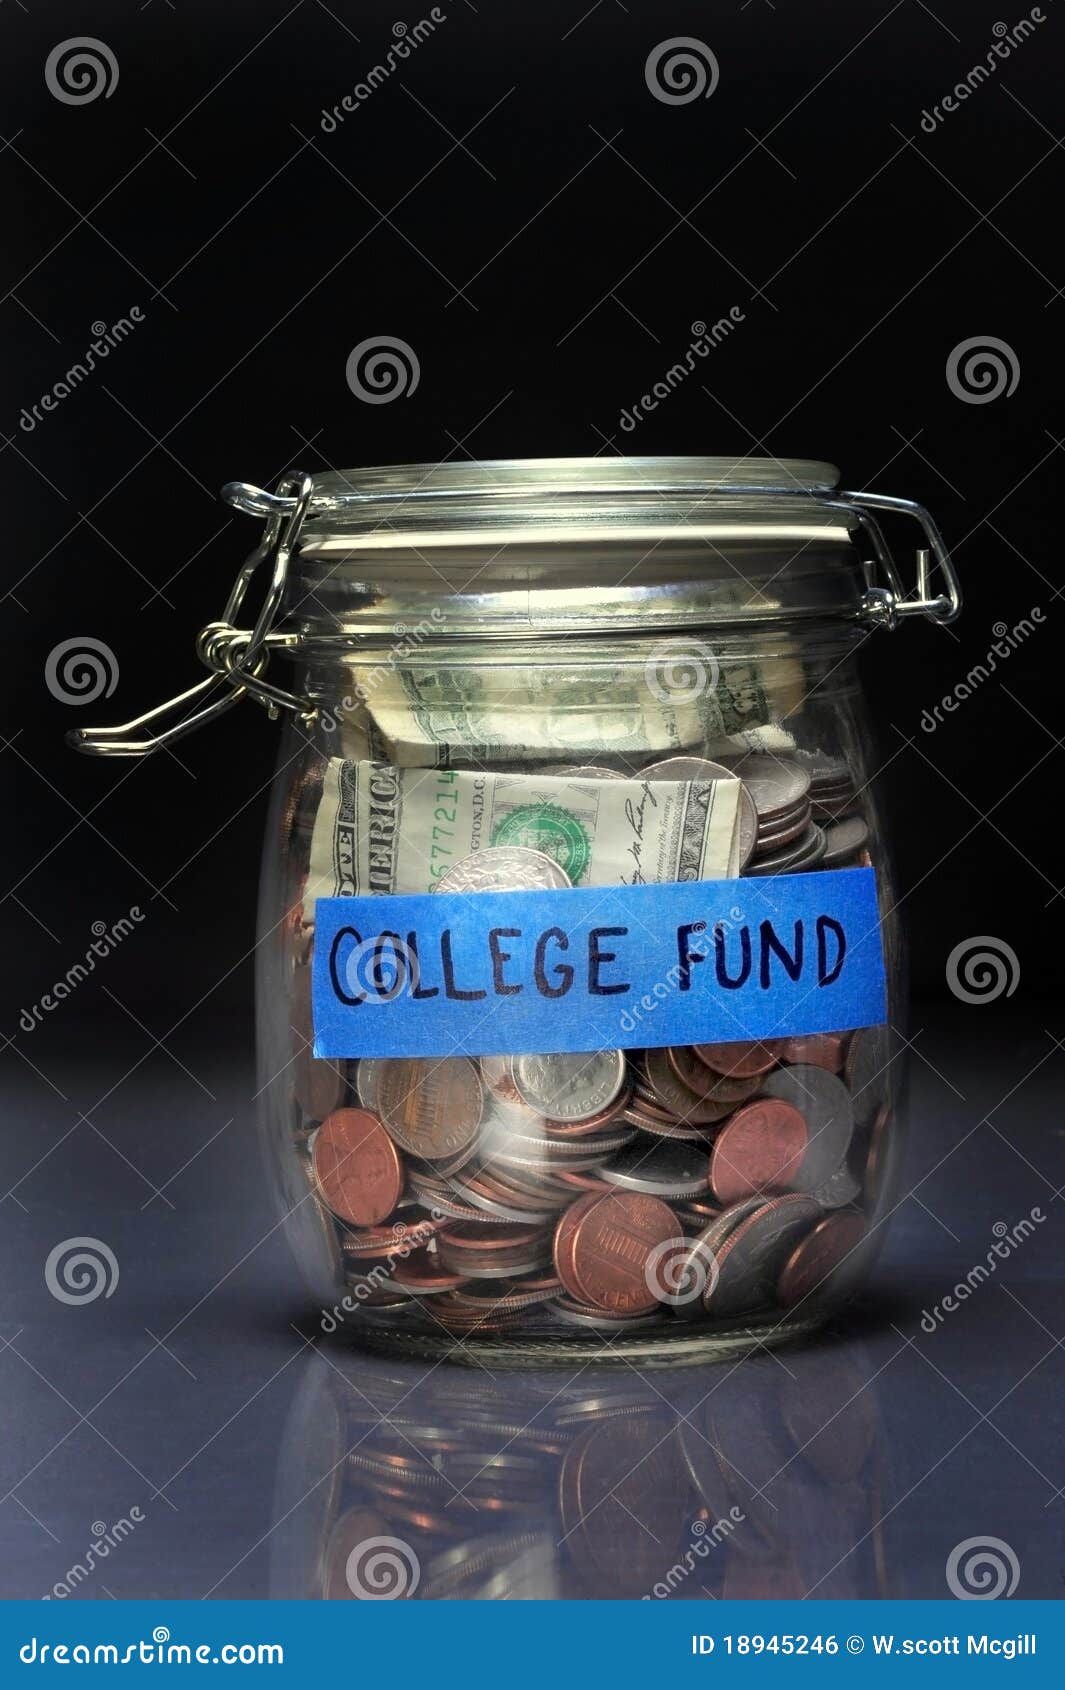 college fund jar